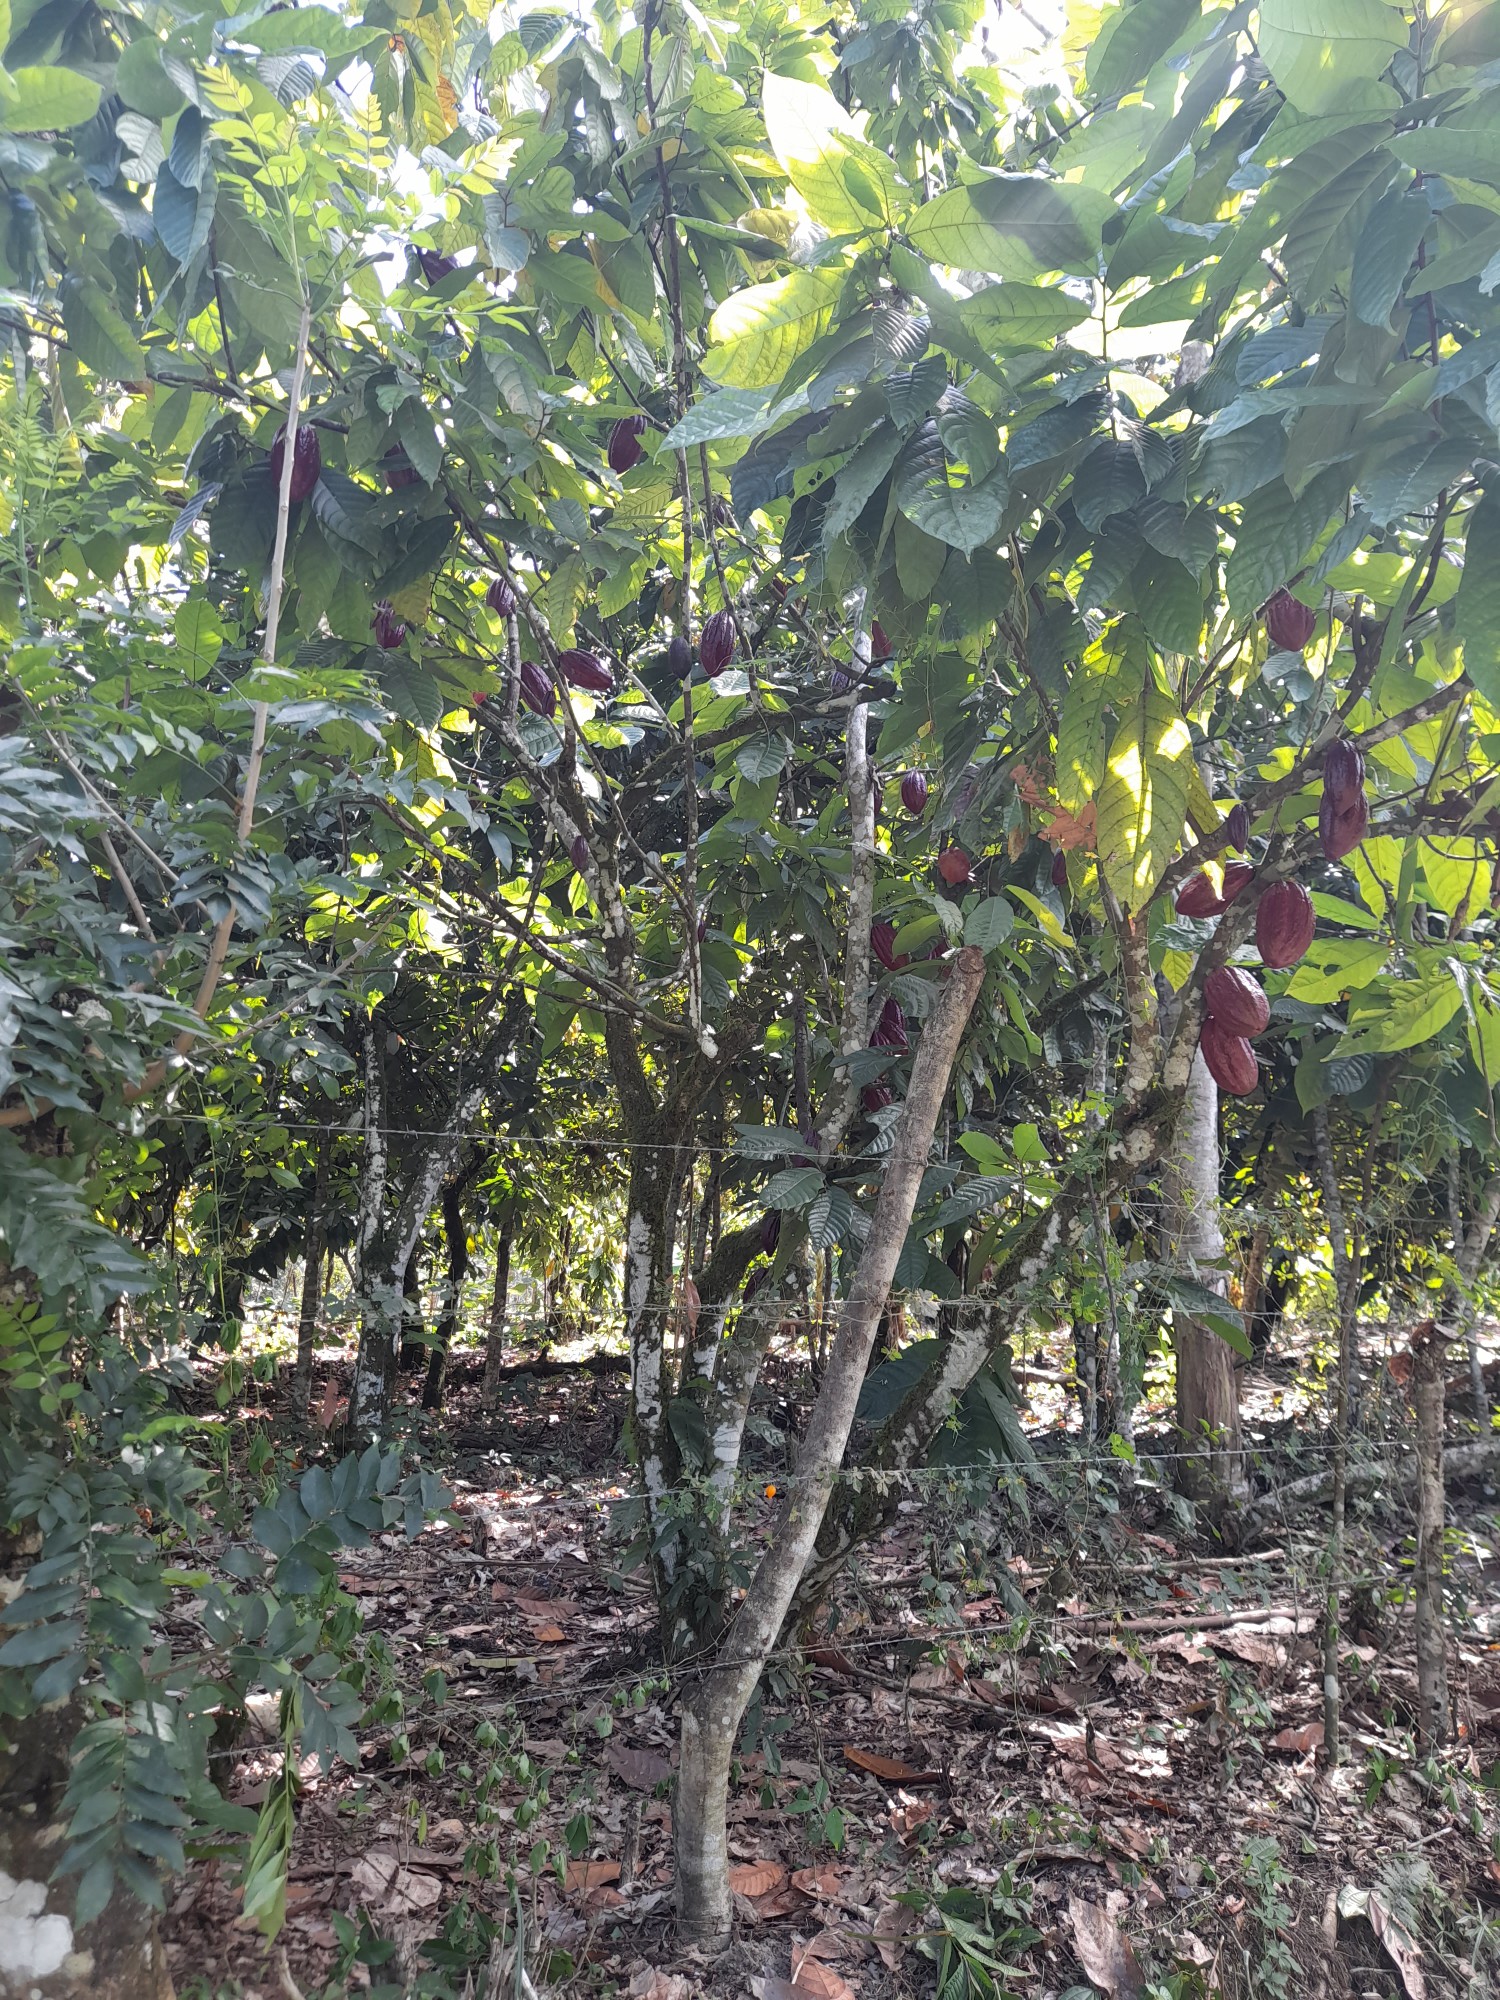 solares y terrenos - 5,800 tareas de Cacao